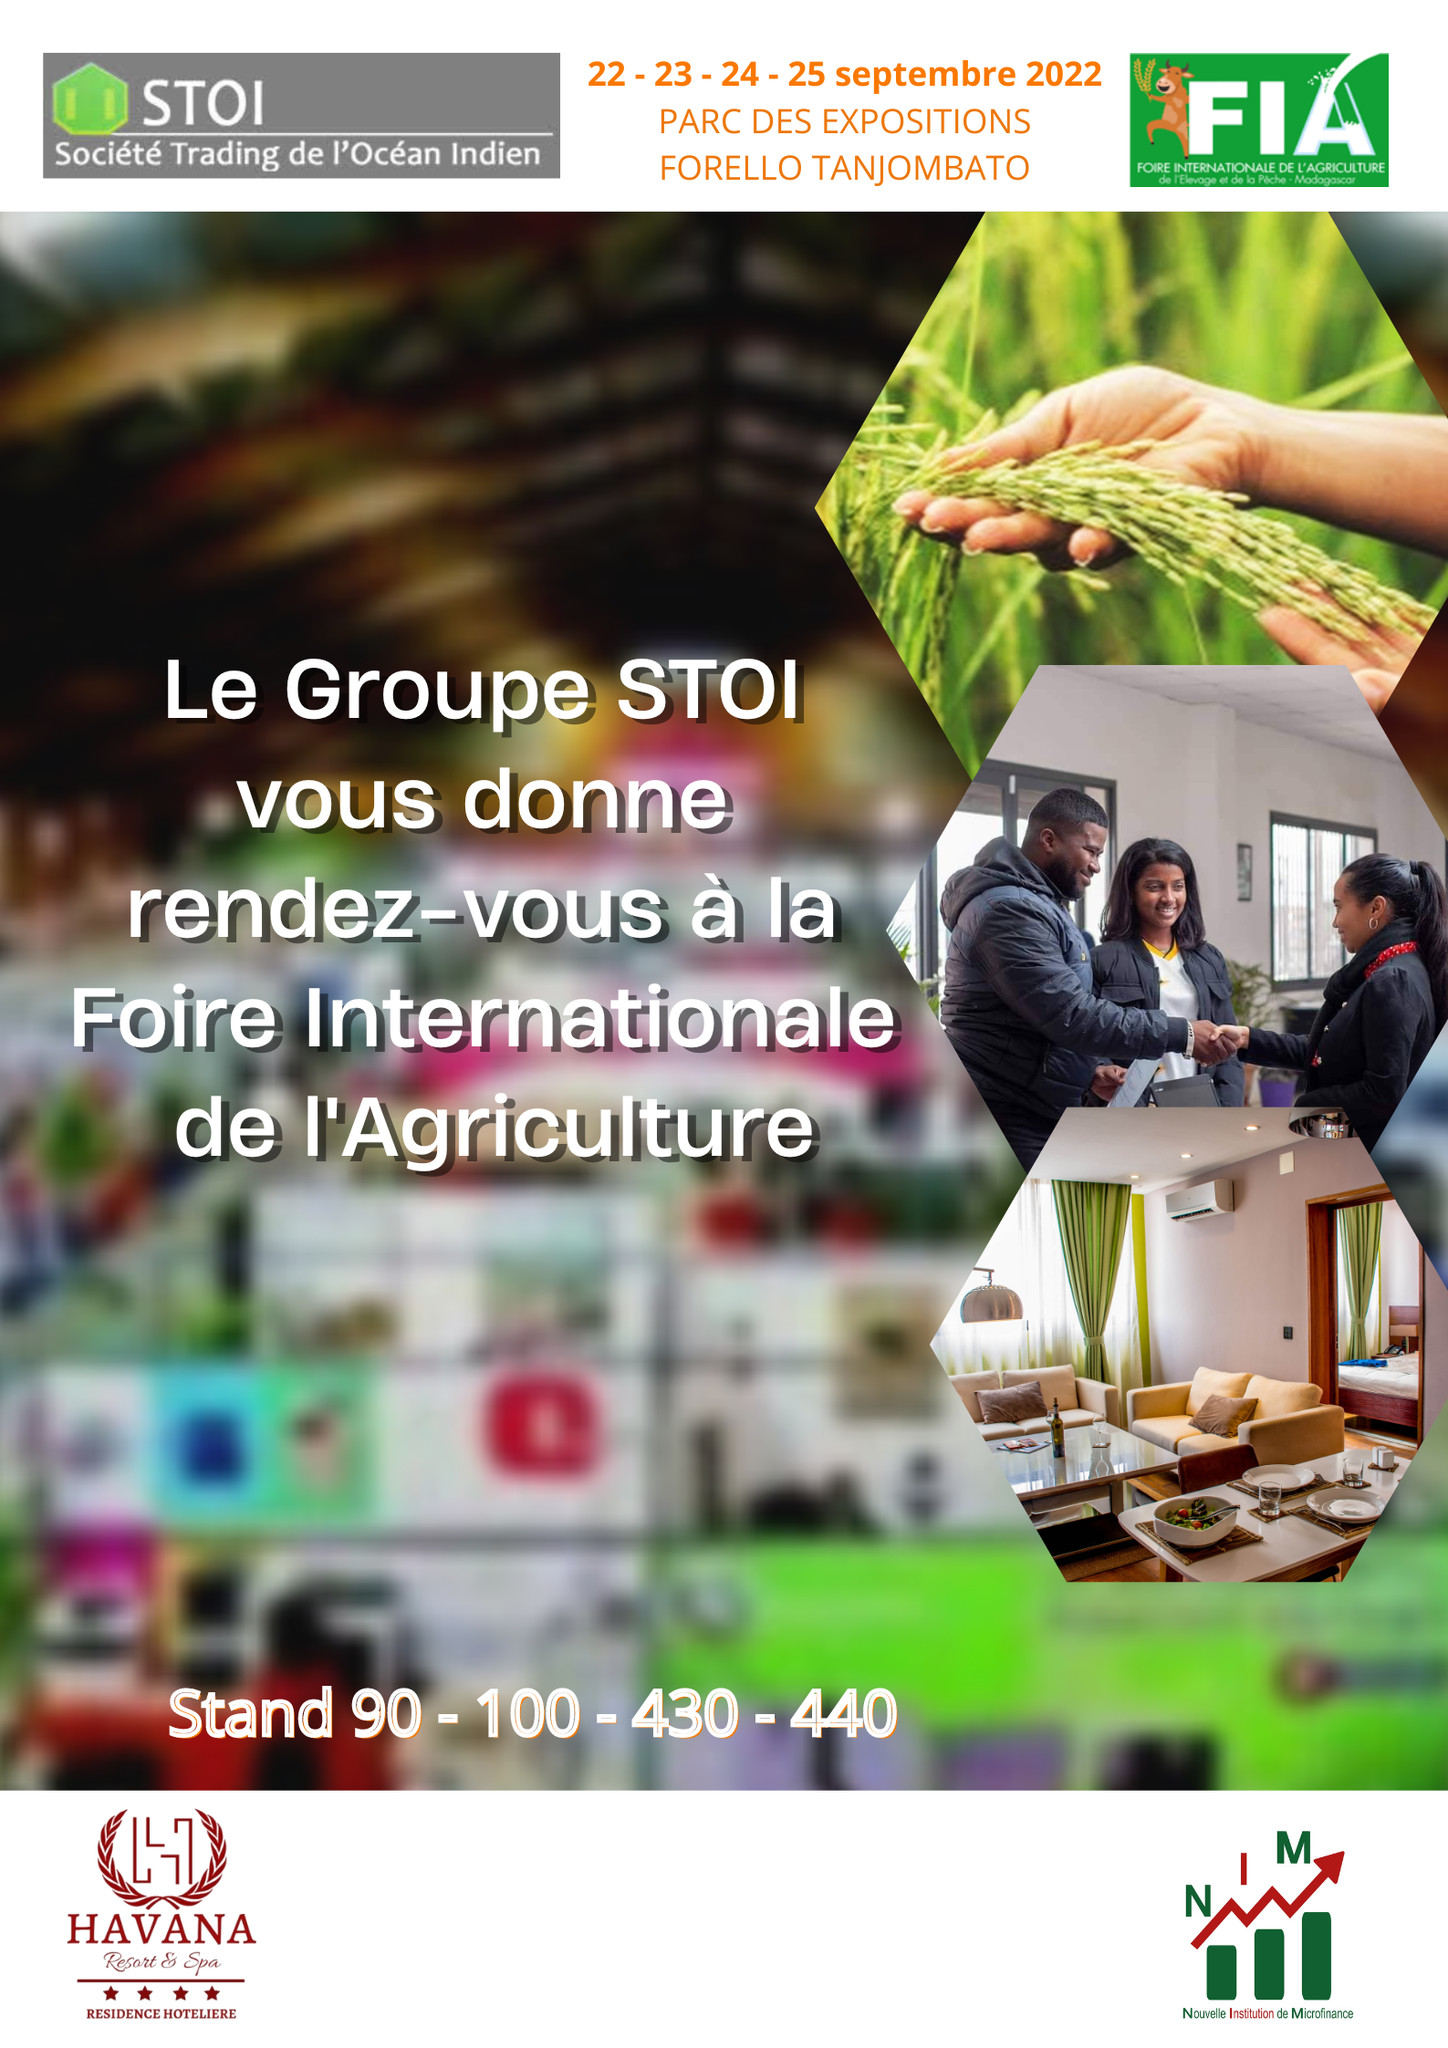 Le groupe STOI vous donne rendez-vous à la foire Internationale de l’Agriculture